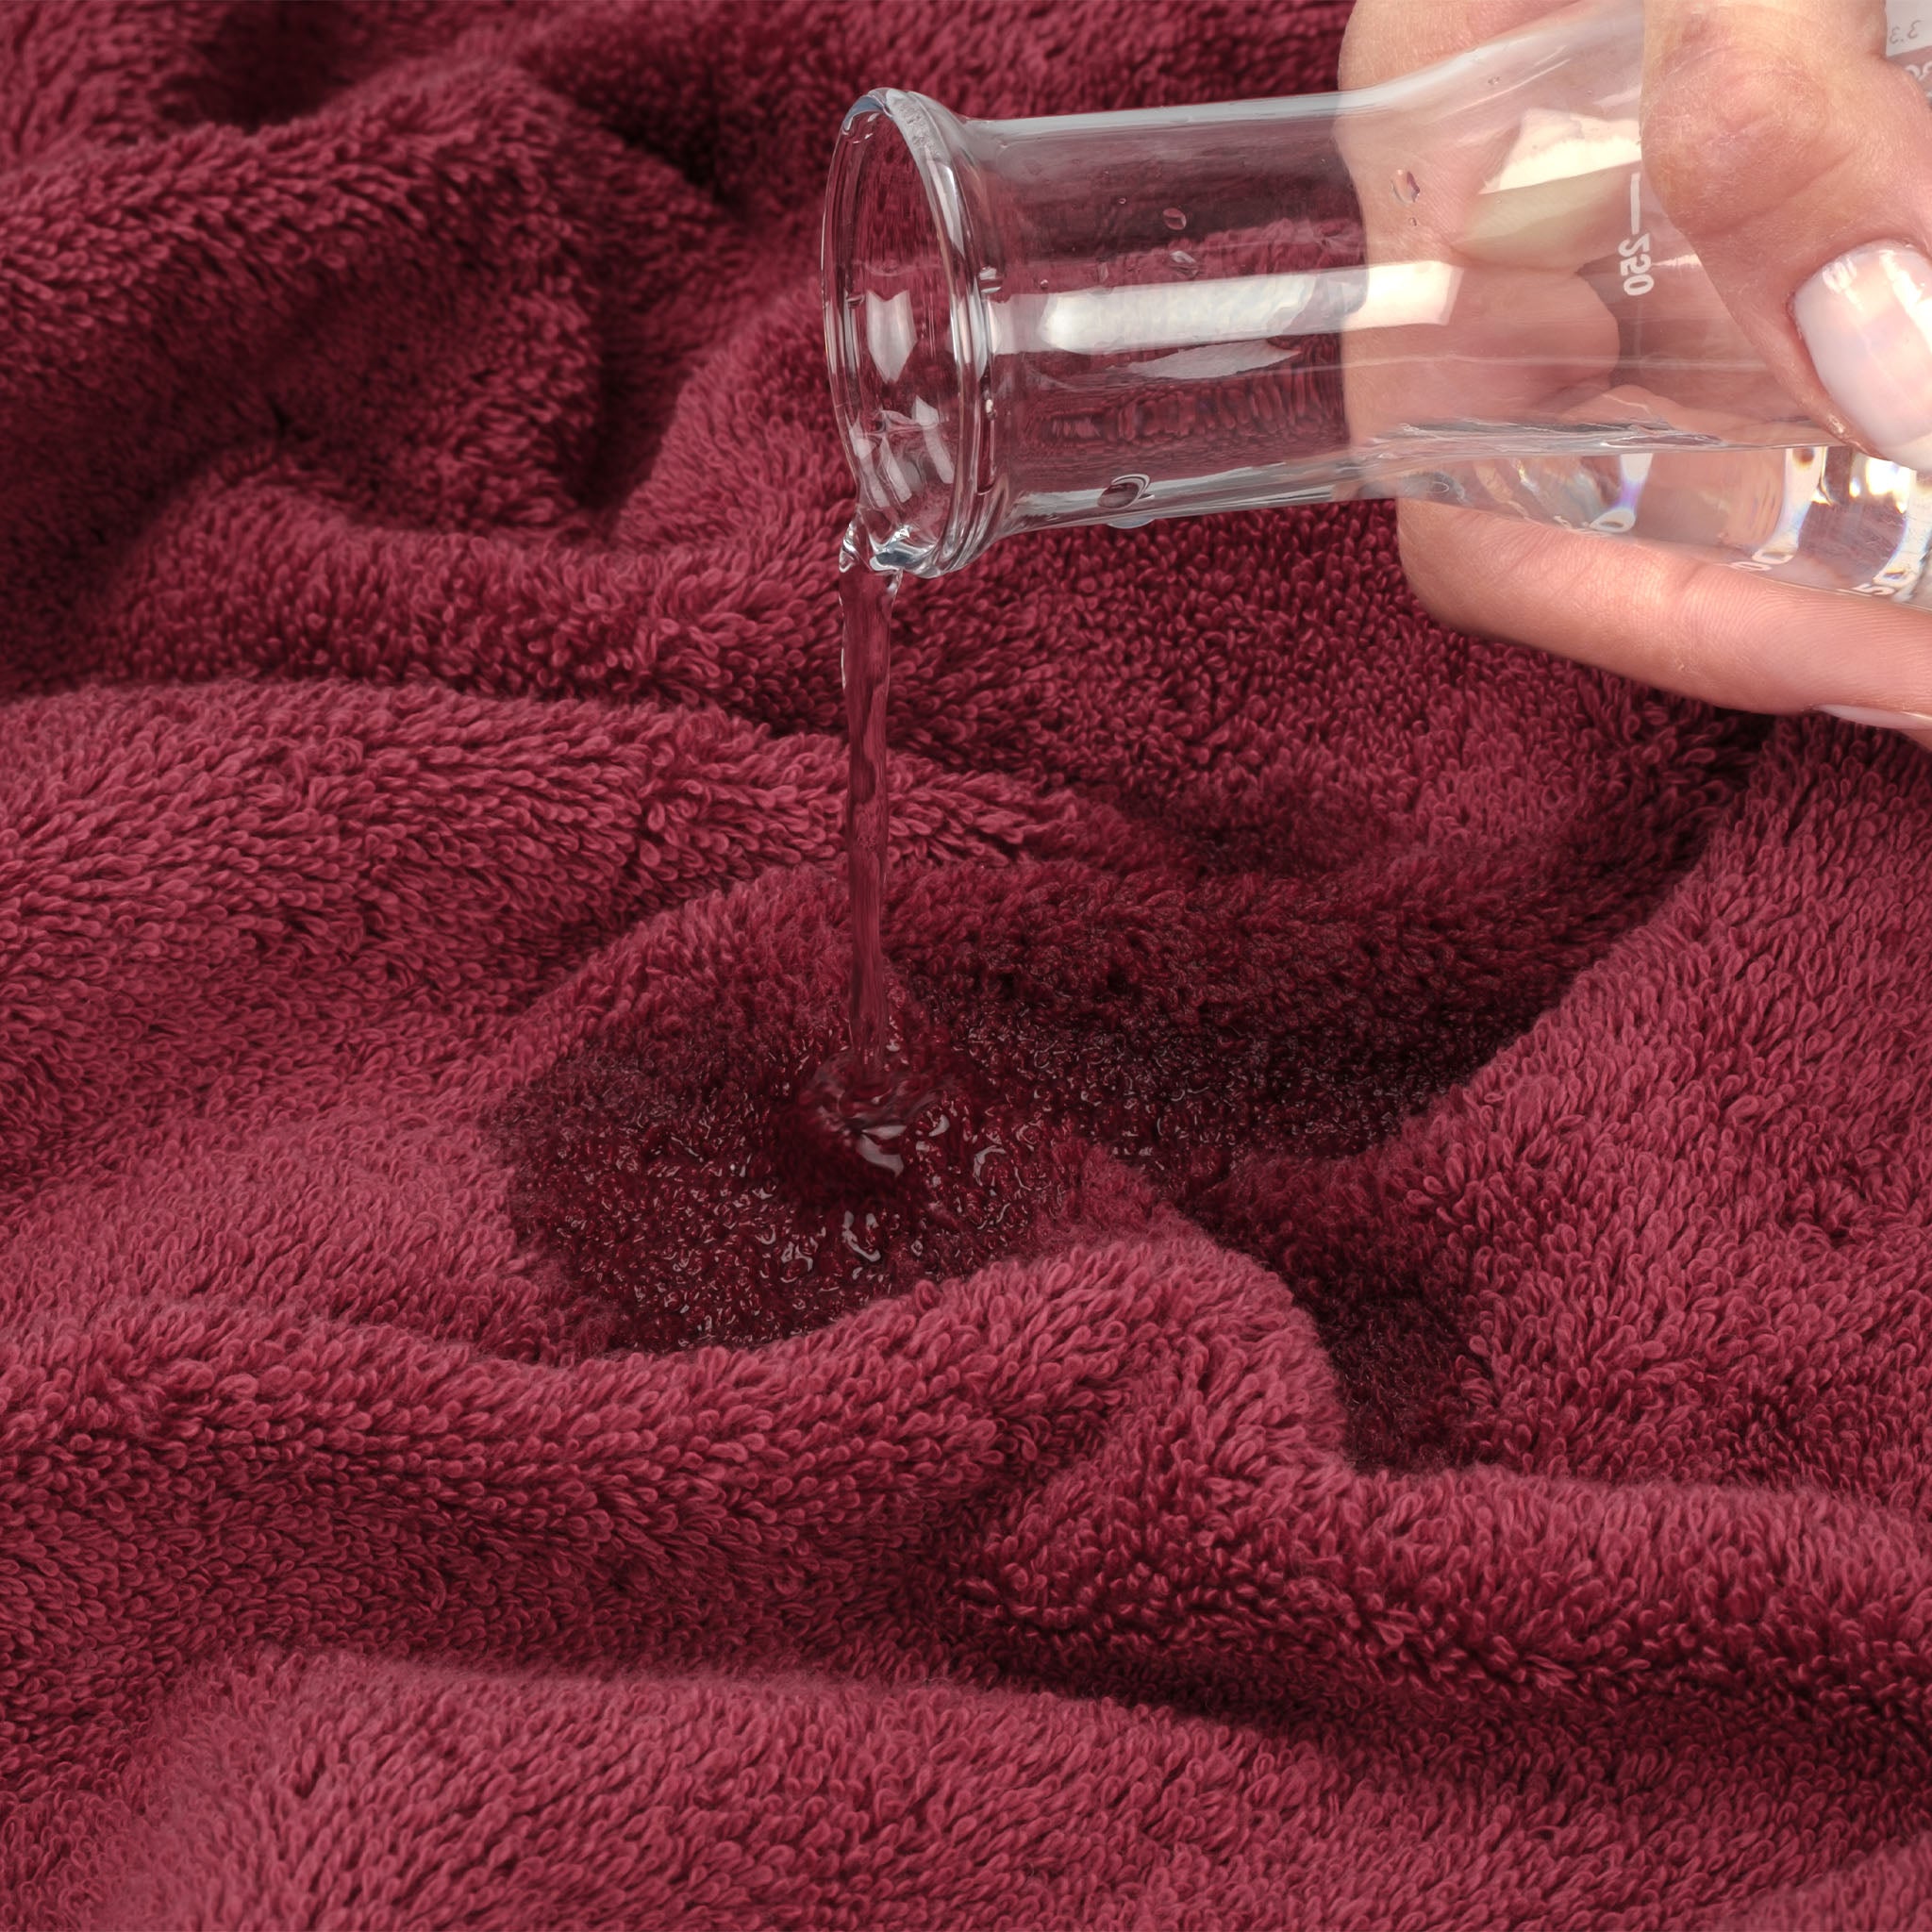 American Soft Linen 100% Turkish Cotton 6 Piece Towel Set Wholesale bordeaux-red-6